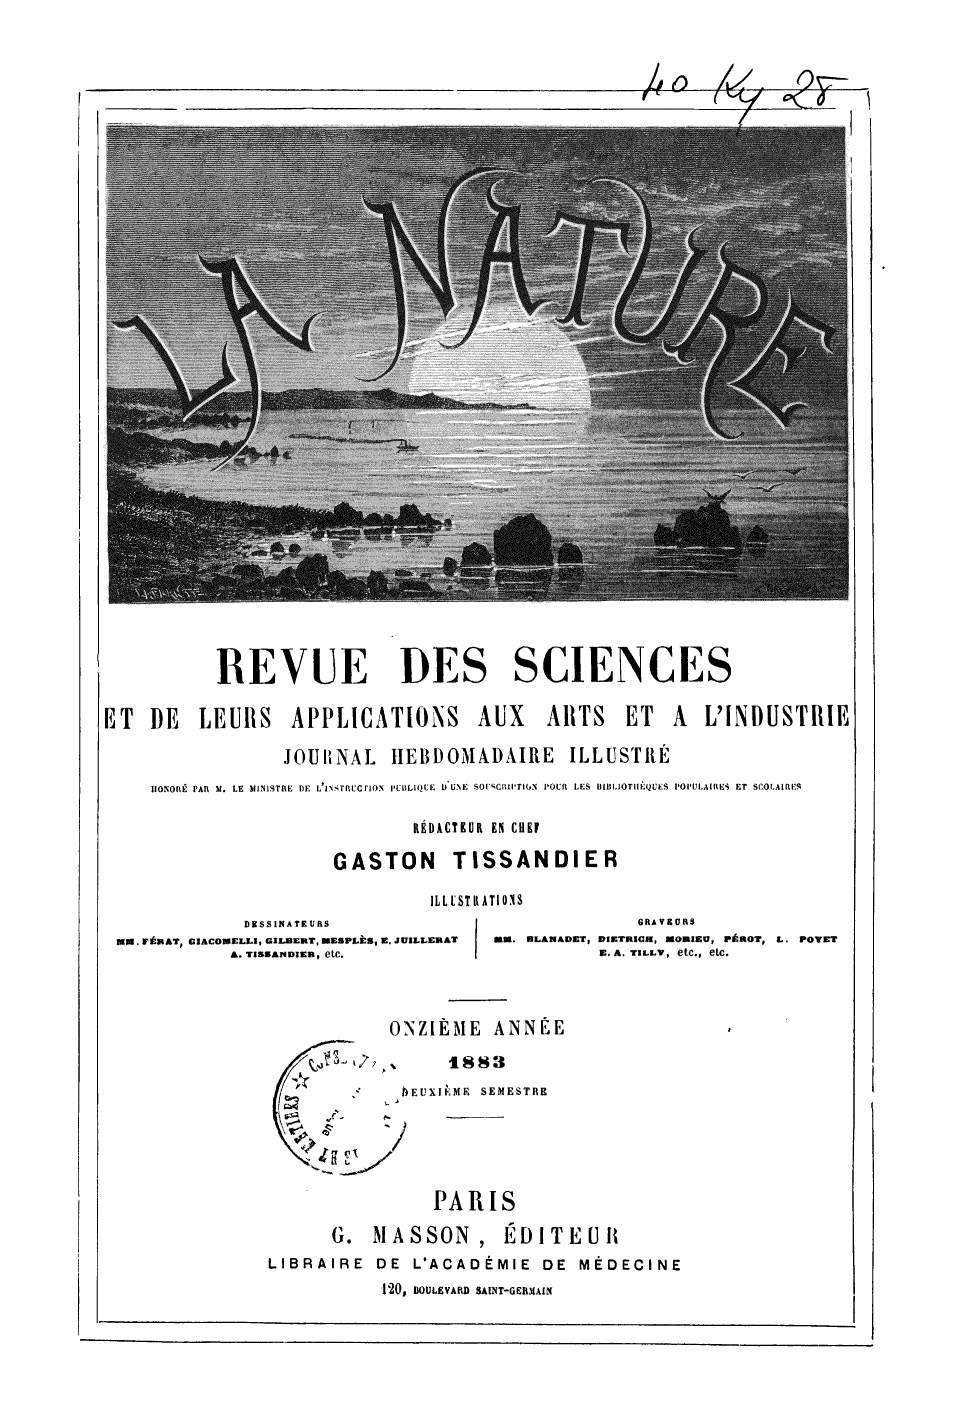 Pinette revue sciences 1